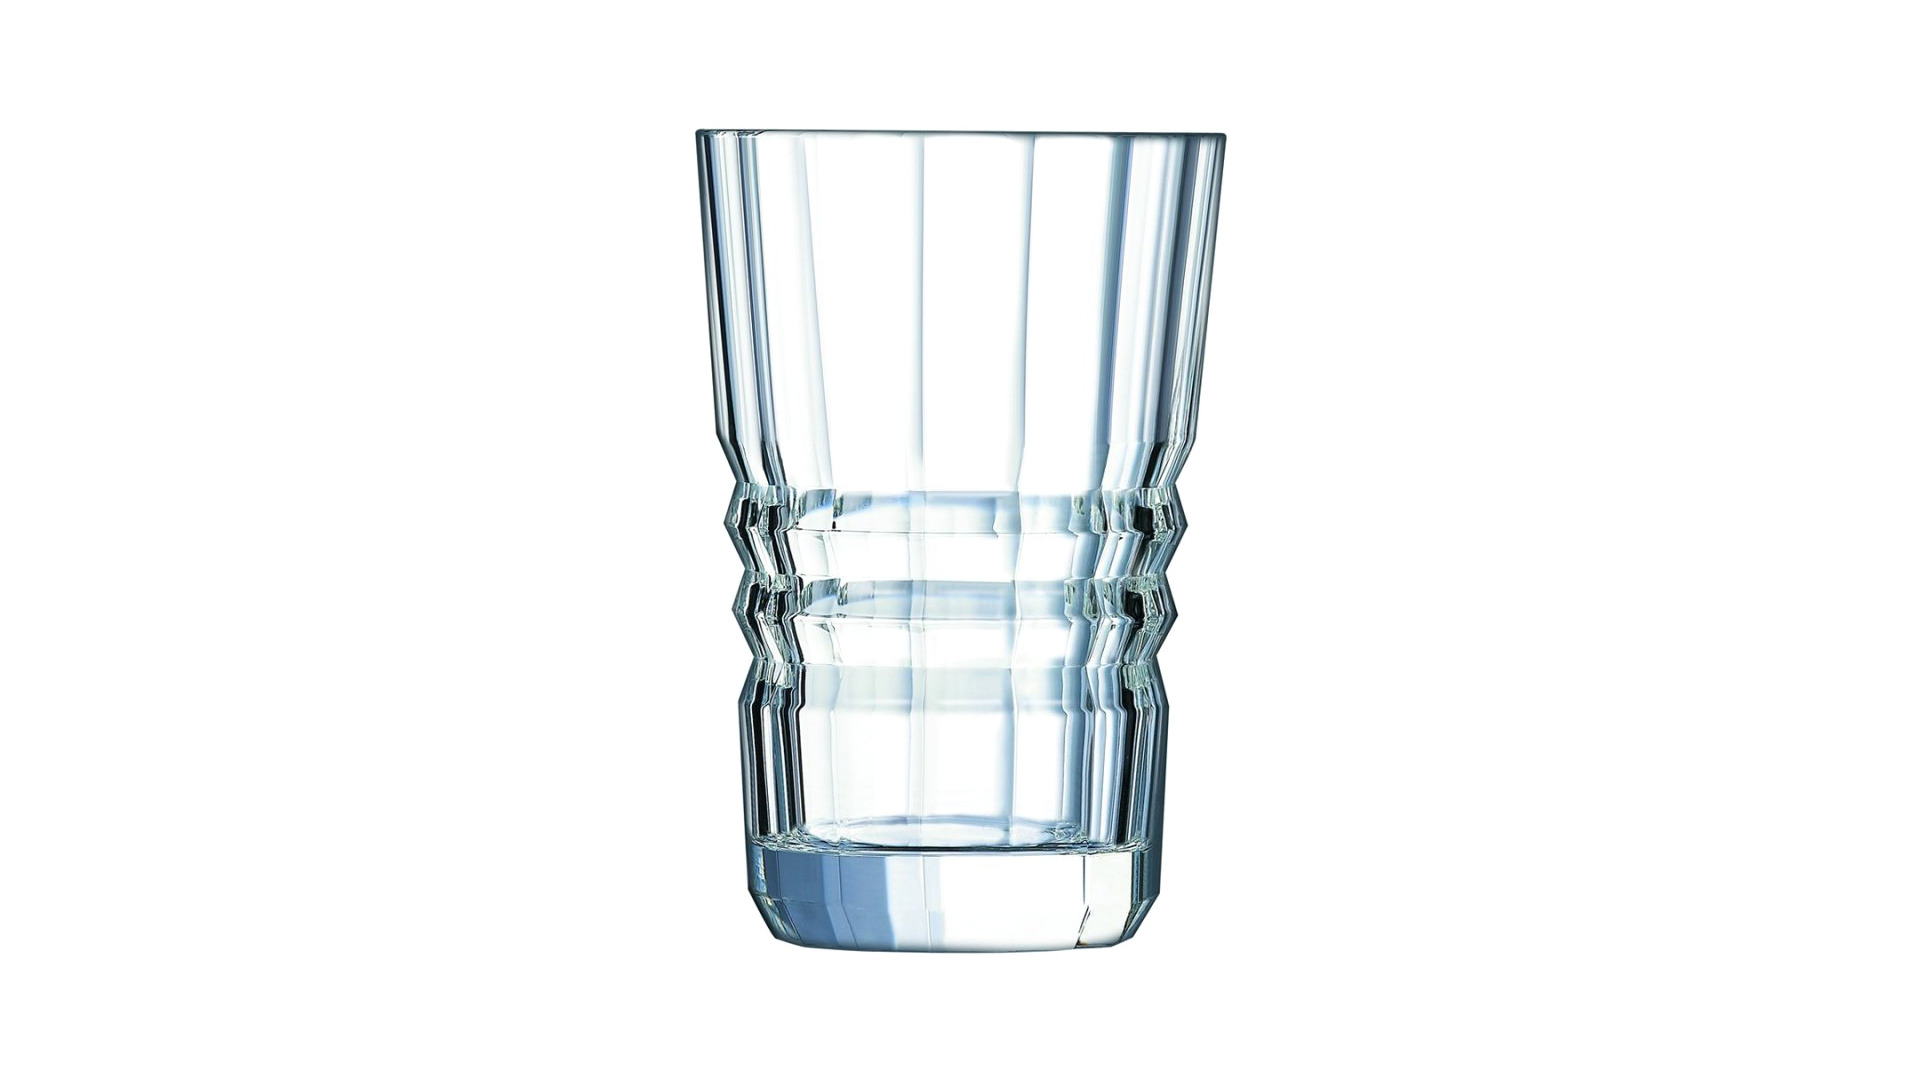 Набор стаканов для воды Cristal D'arques Architecte 360 мл, 6 шт,стекло